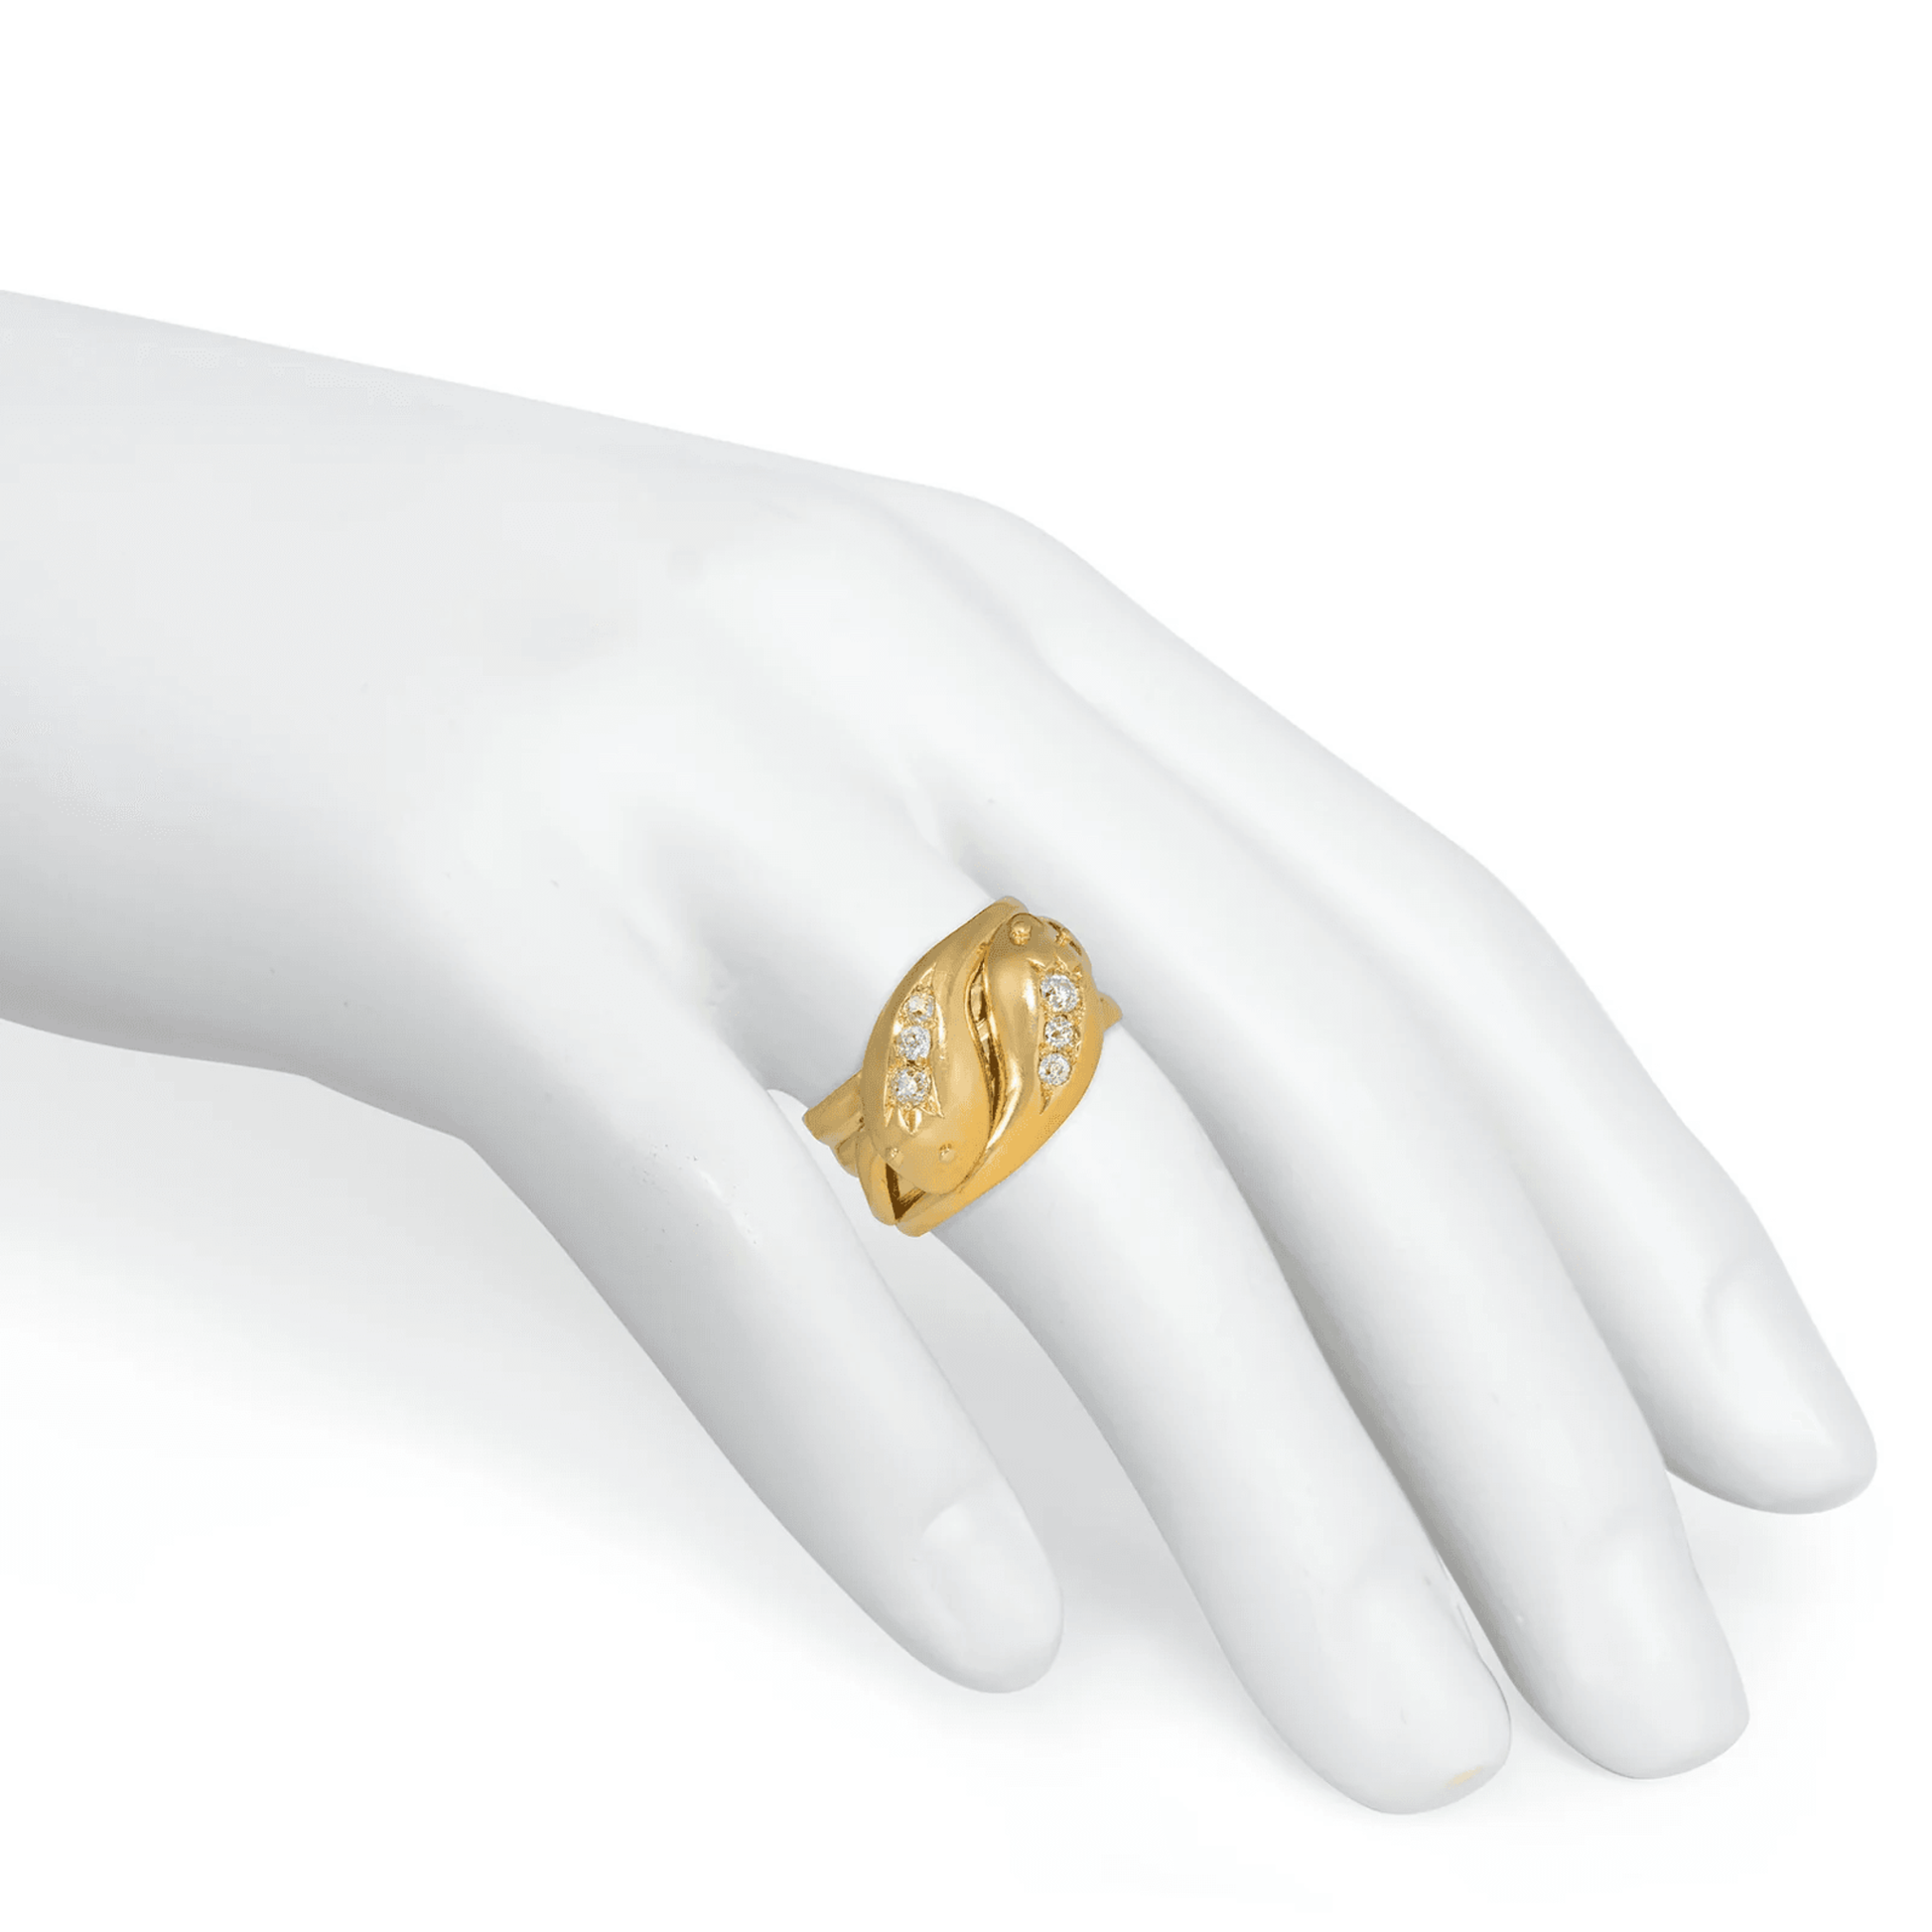 Victorian 18KT Yellow Gold Diamond Snake Ring on finger